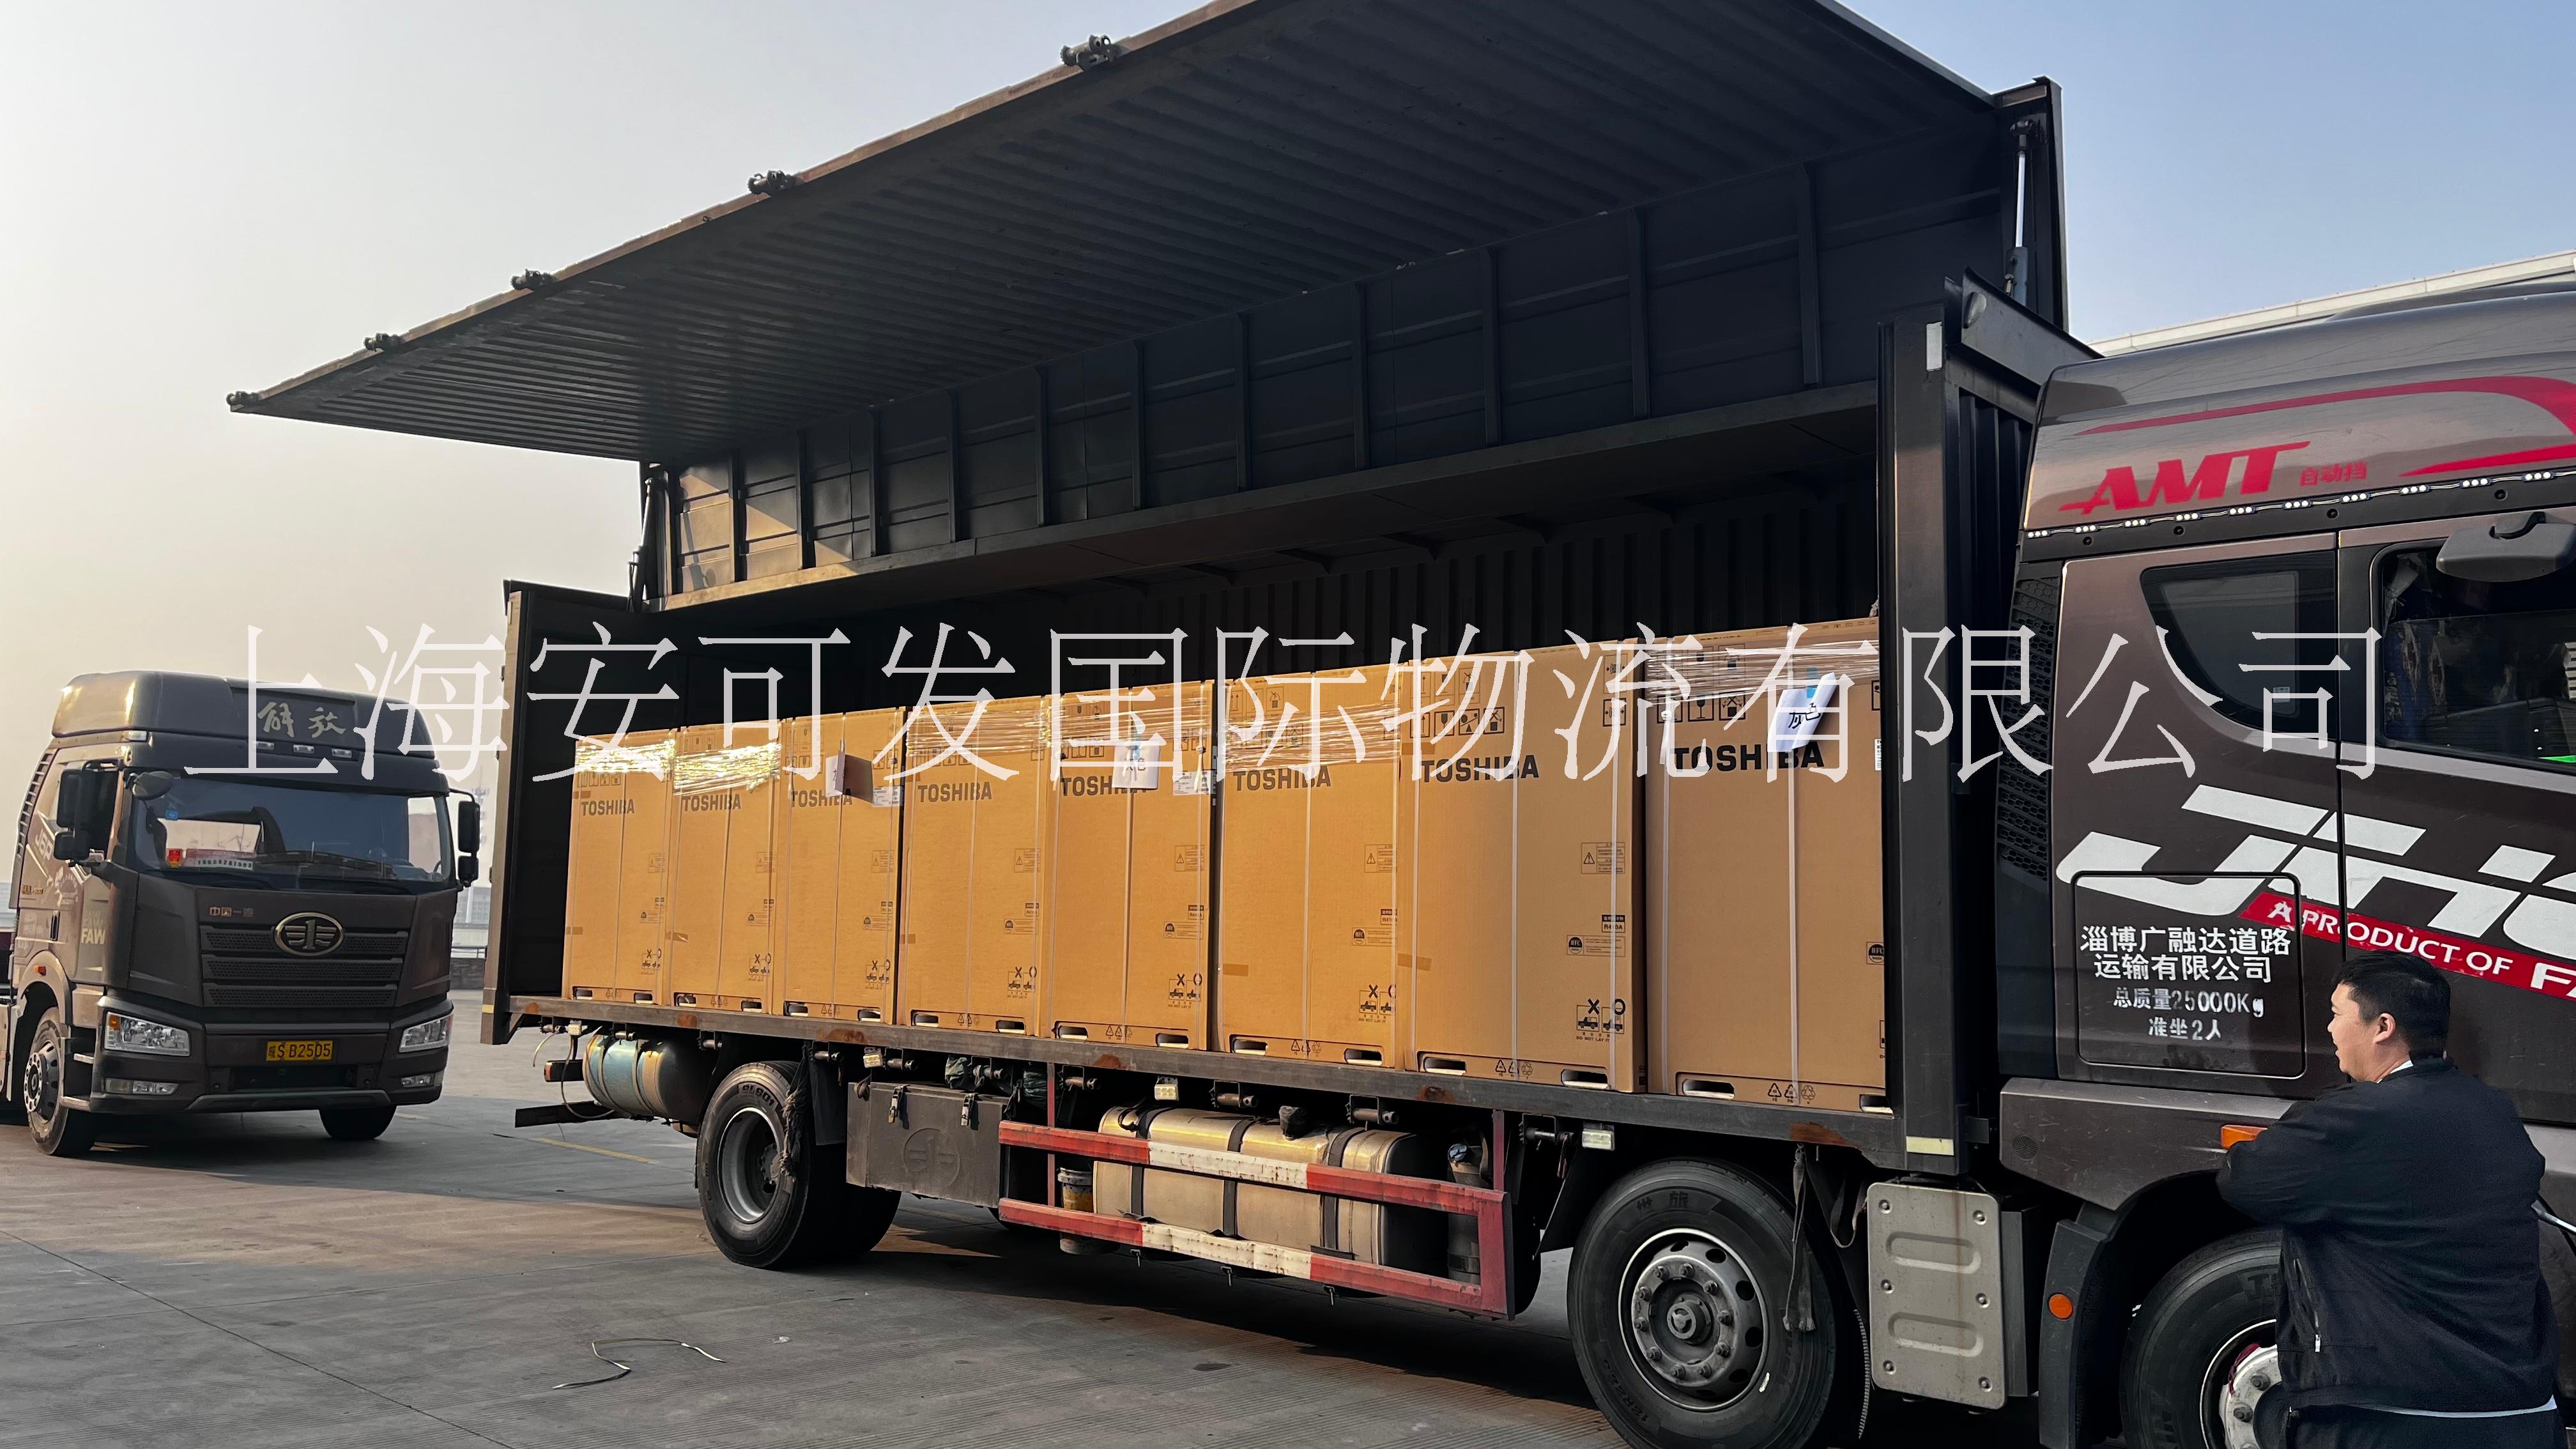 上海提供到全国整车物流服务 上海至襄阳货运专线 仓储服务 上海至襄阳整车运输